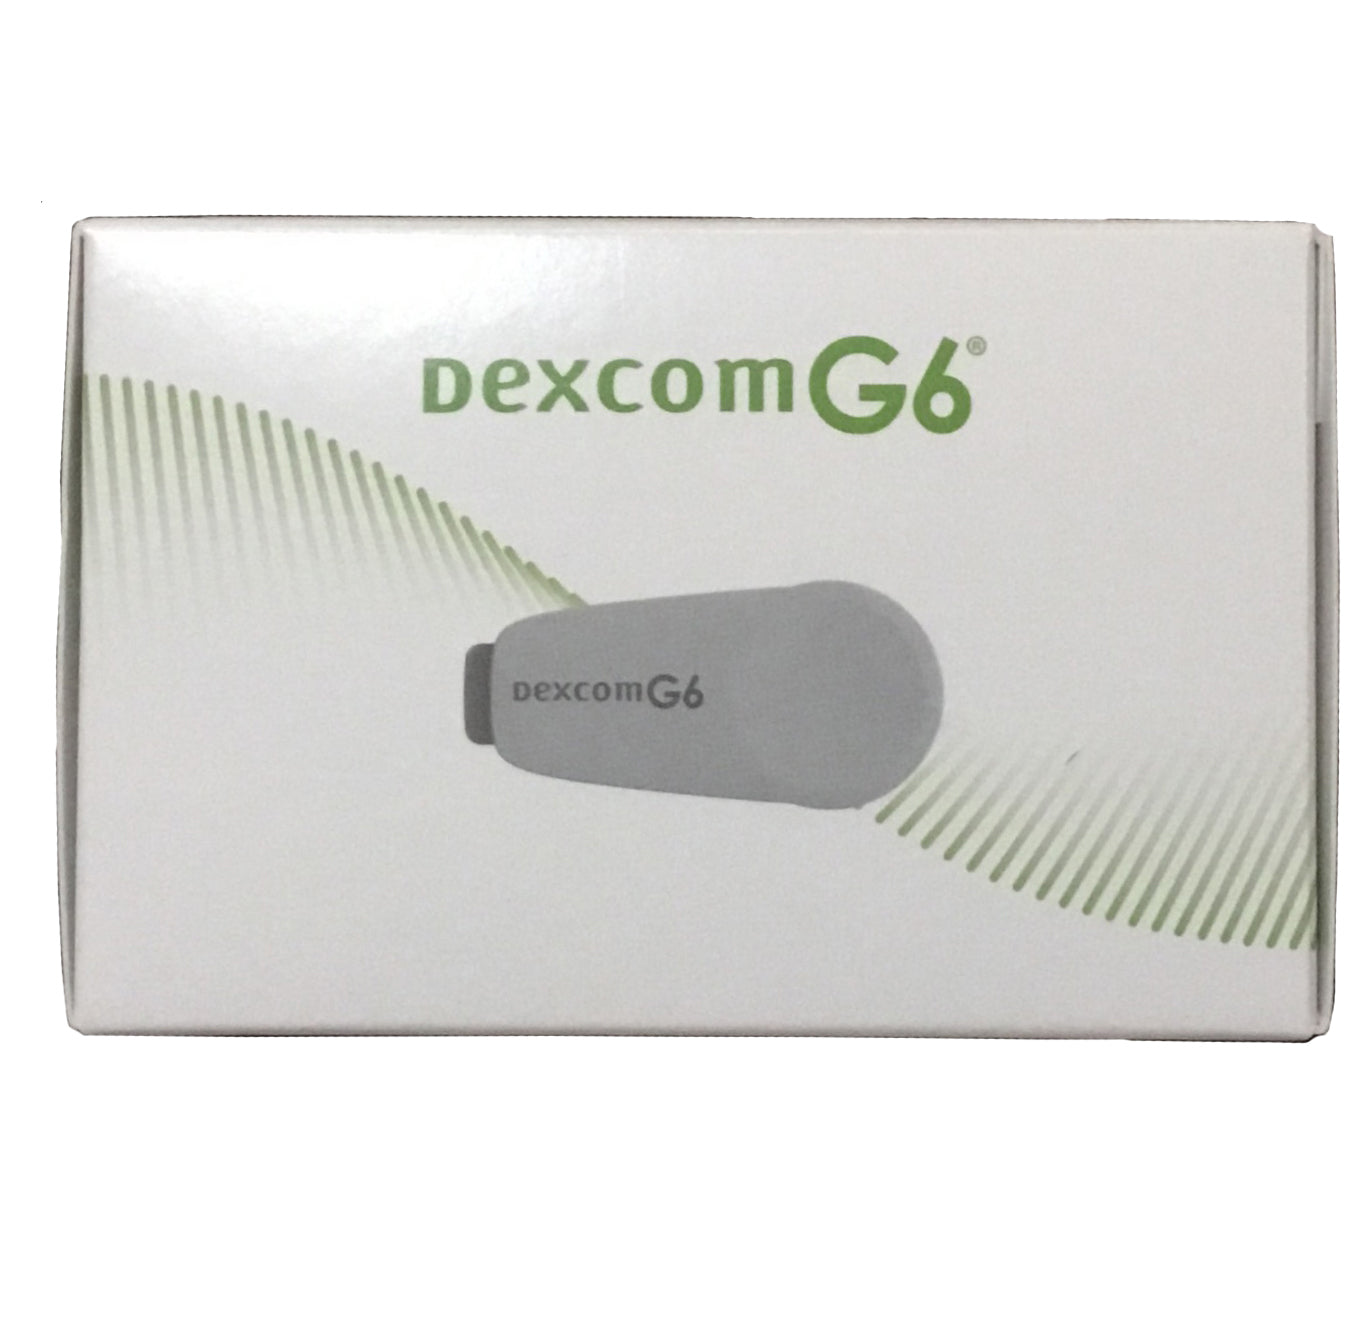 How do I replace my Dexcom G6 transmitter?